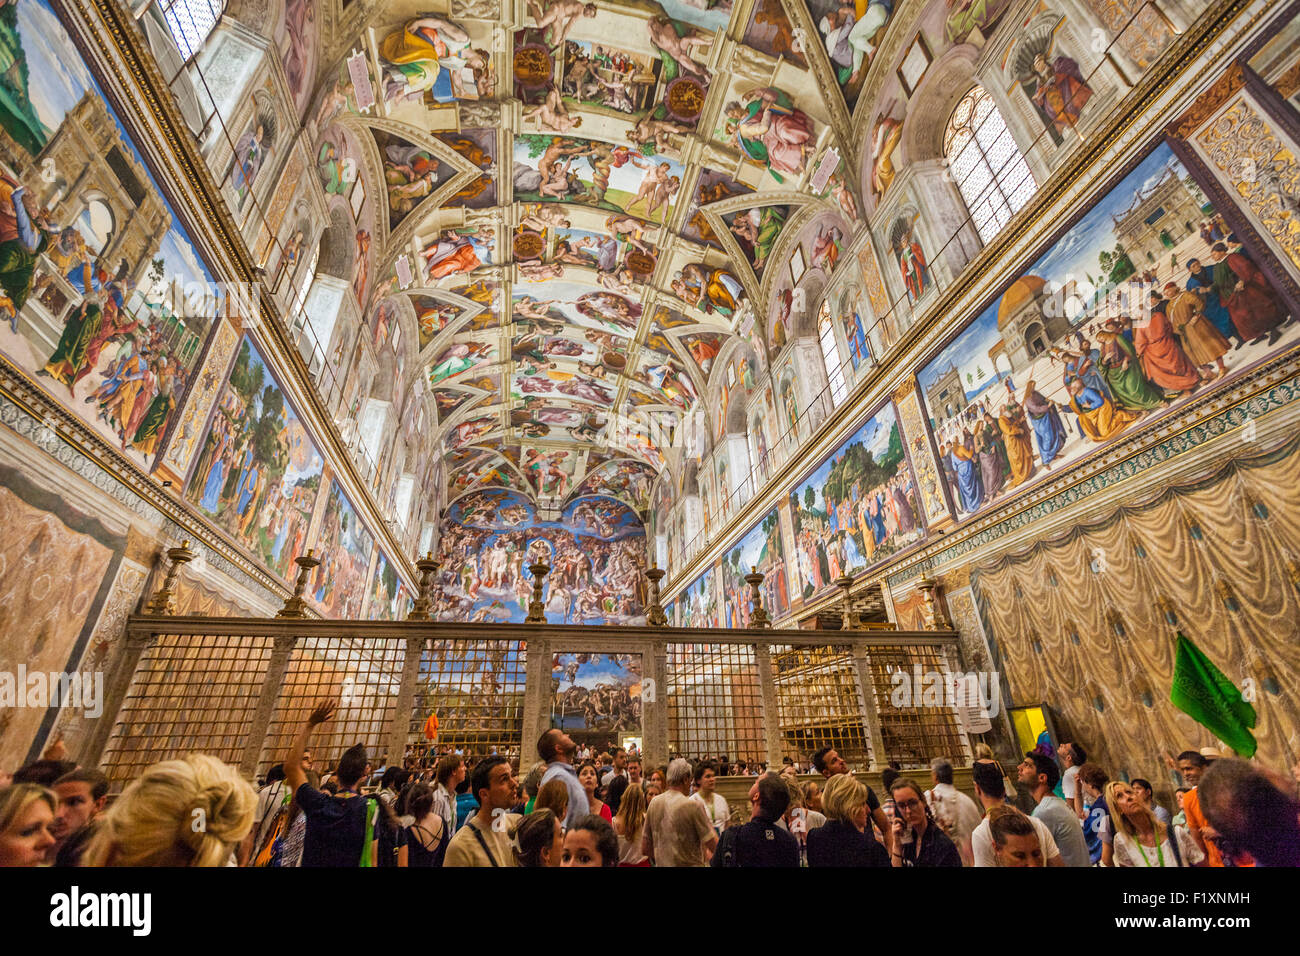 Besucher und Touristen in der Sixtinischen Kapelle Apostolischen Palast Vatikan Museum Vatikanstadt Rom Italien EU Europa Stockfoto